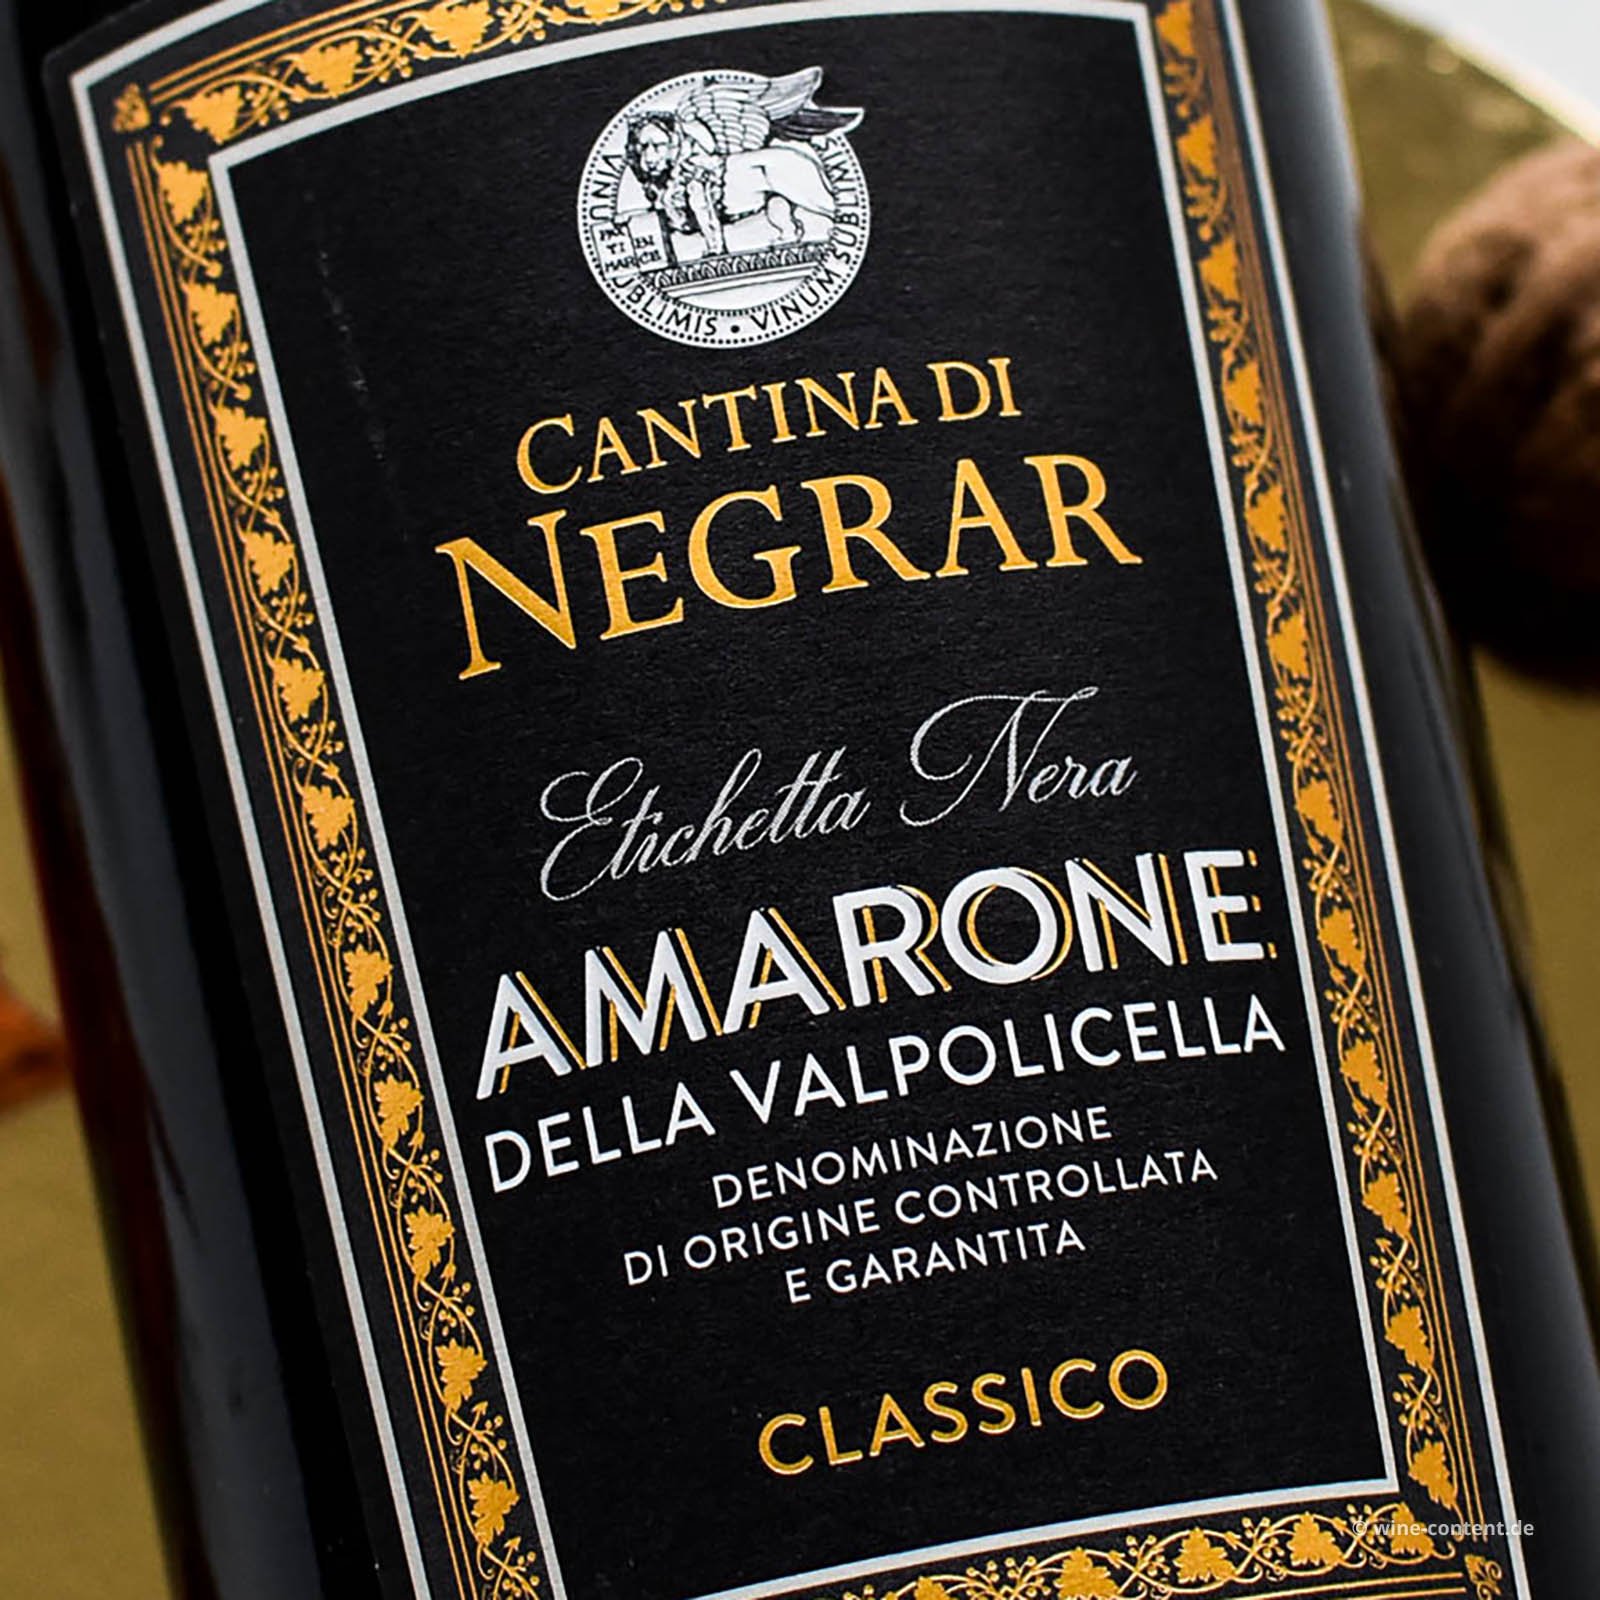 Amarone Classico 2018 Etichetta Nera